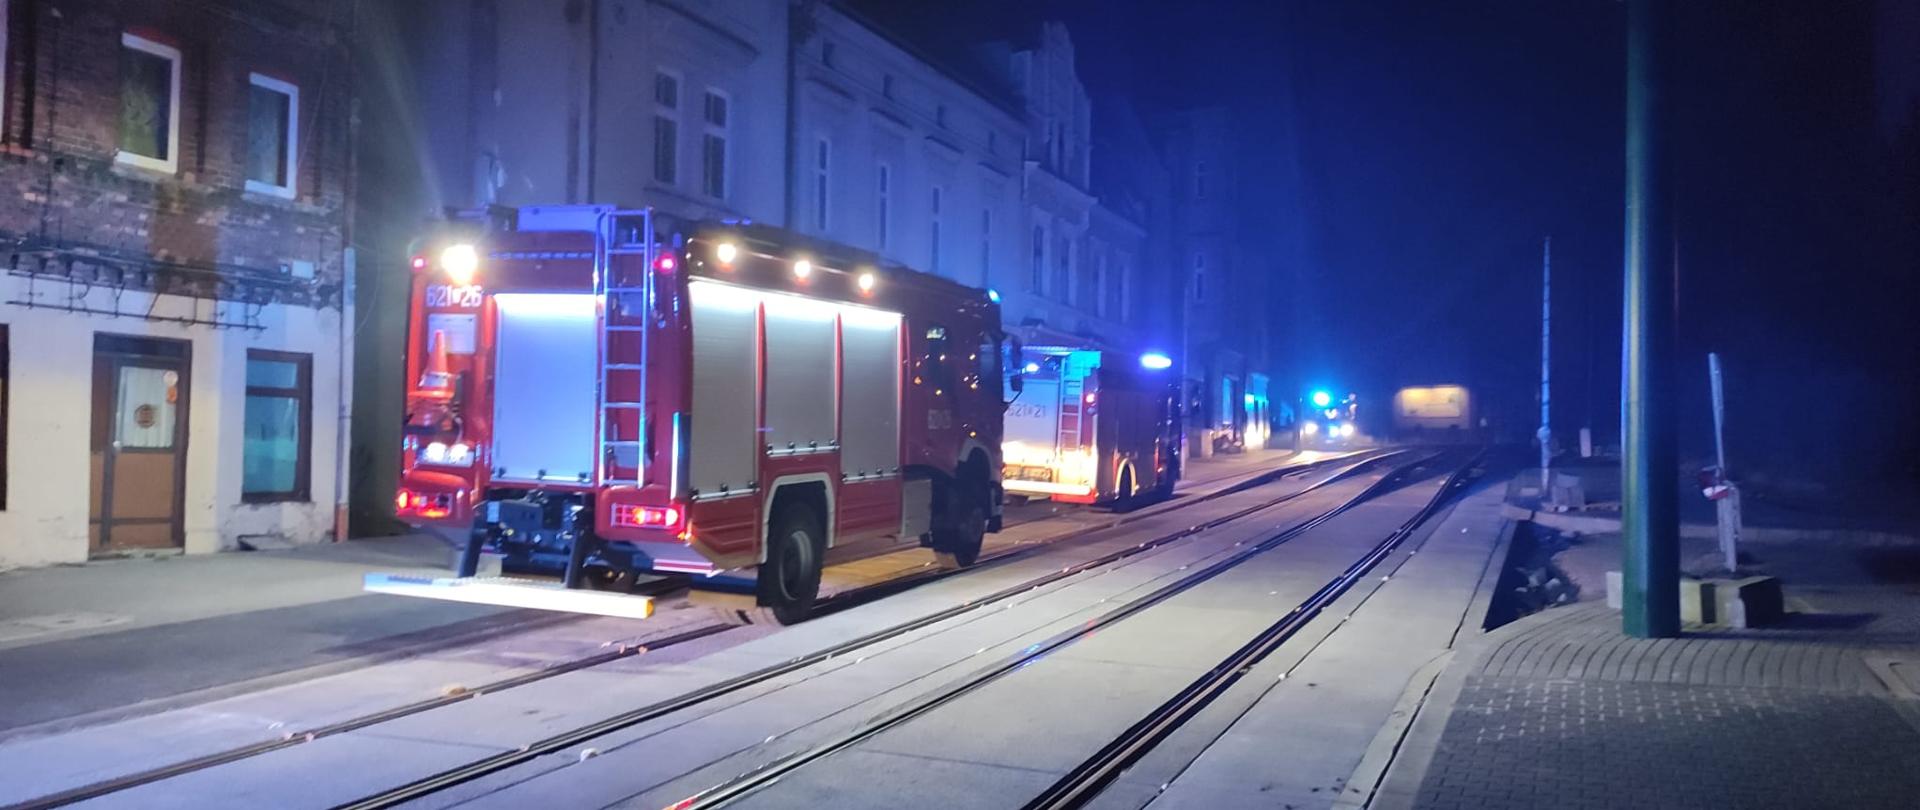 Zdjęcie przedstawia dwa wozy strażackie z włączonymi sygnałami świetlnymi stojące przed budynkiem przy ulicy Łagiewnickiej.